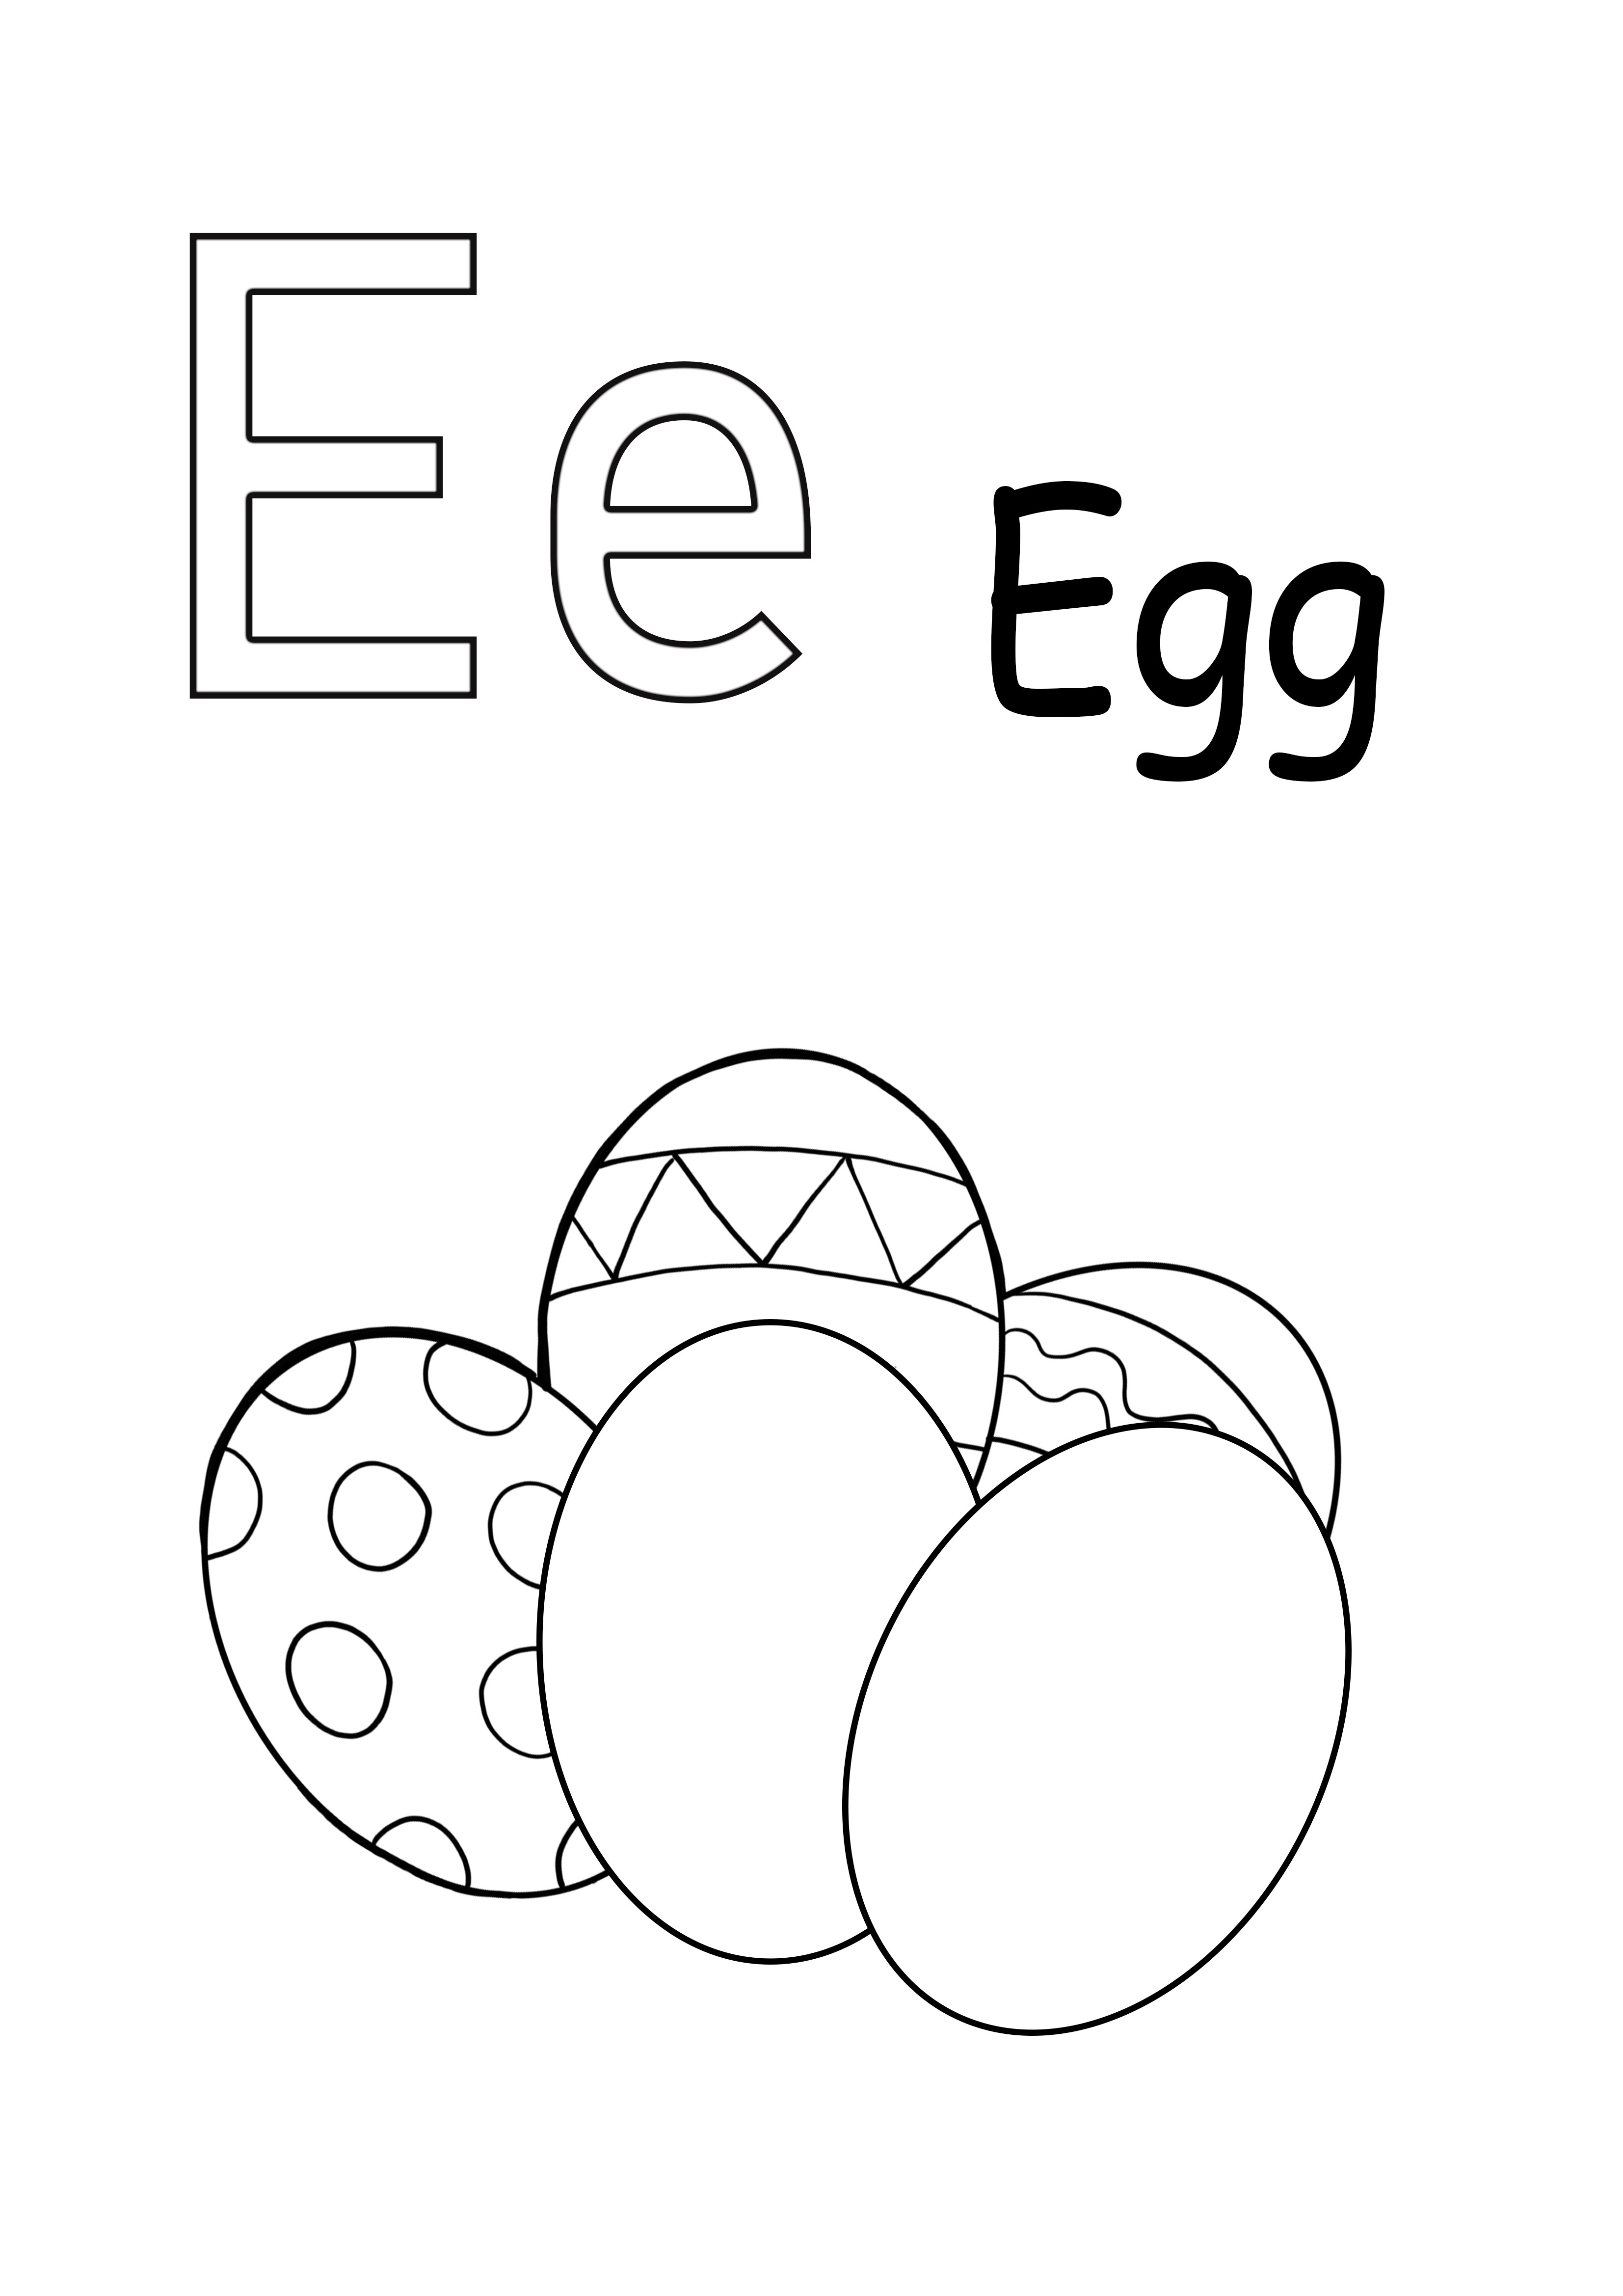 La lettera E è per il foglio stampabile delle uova per una semplice colorazione